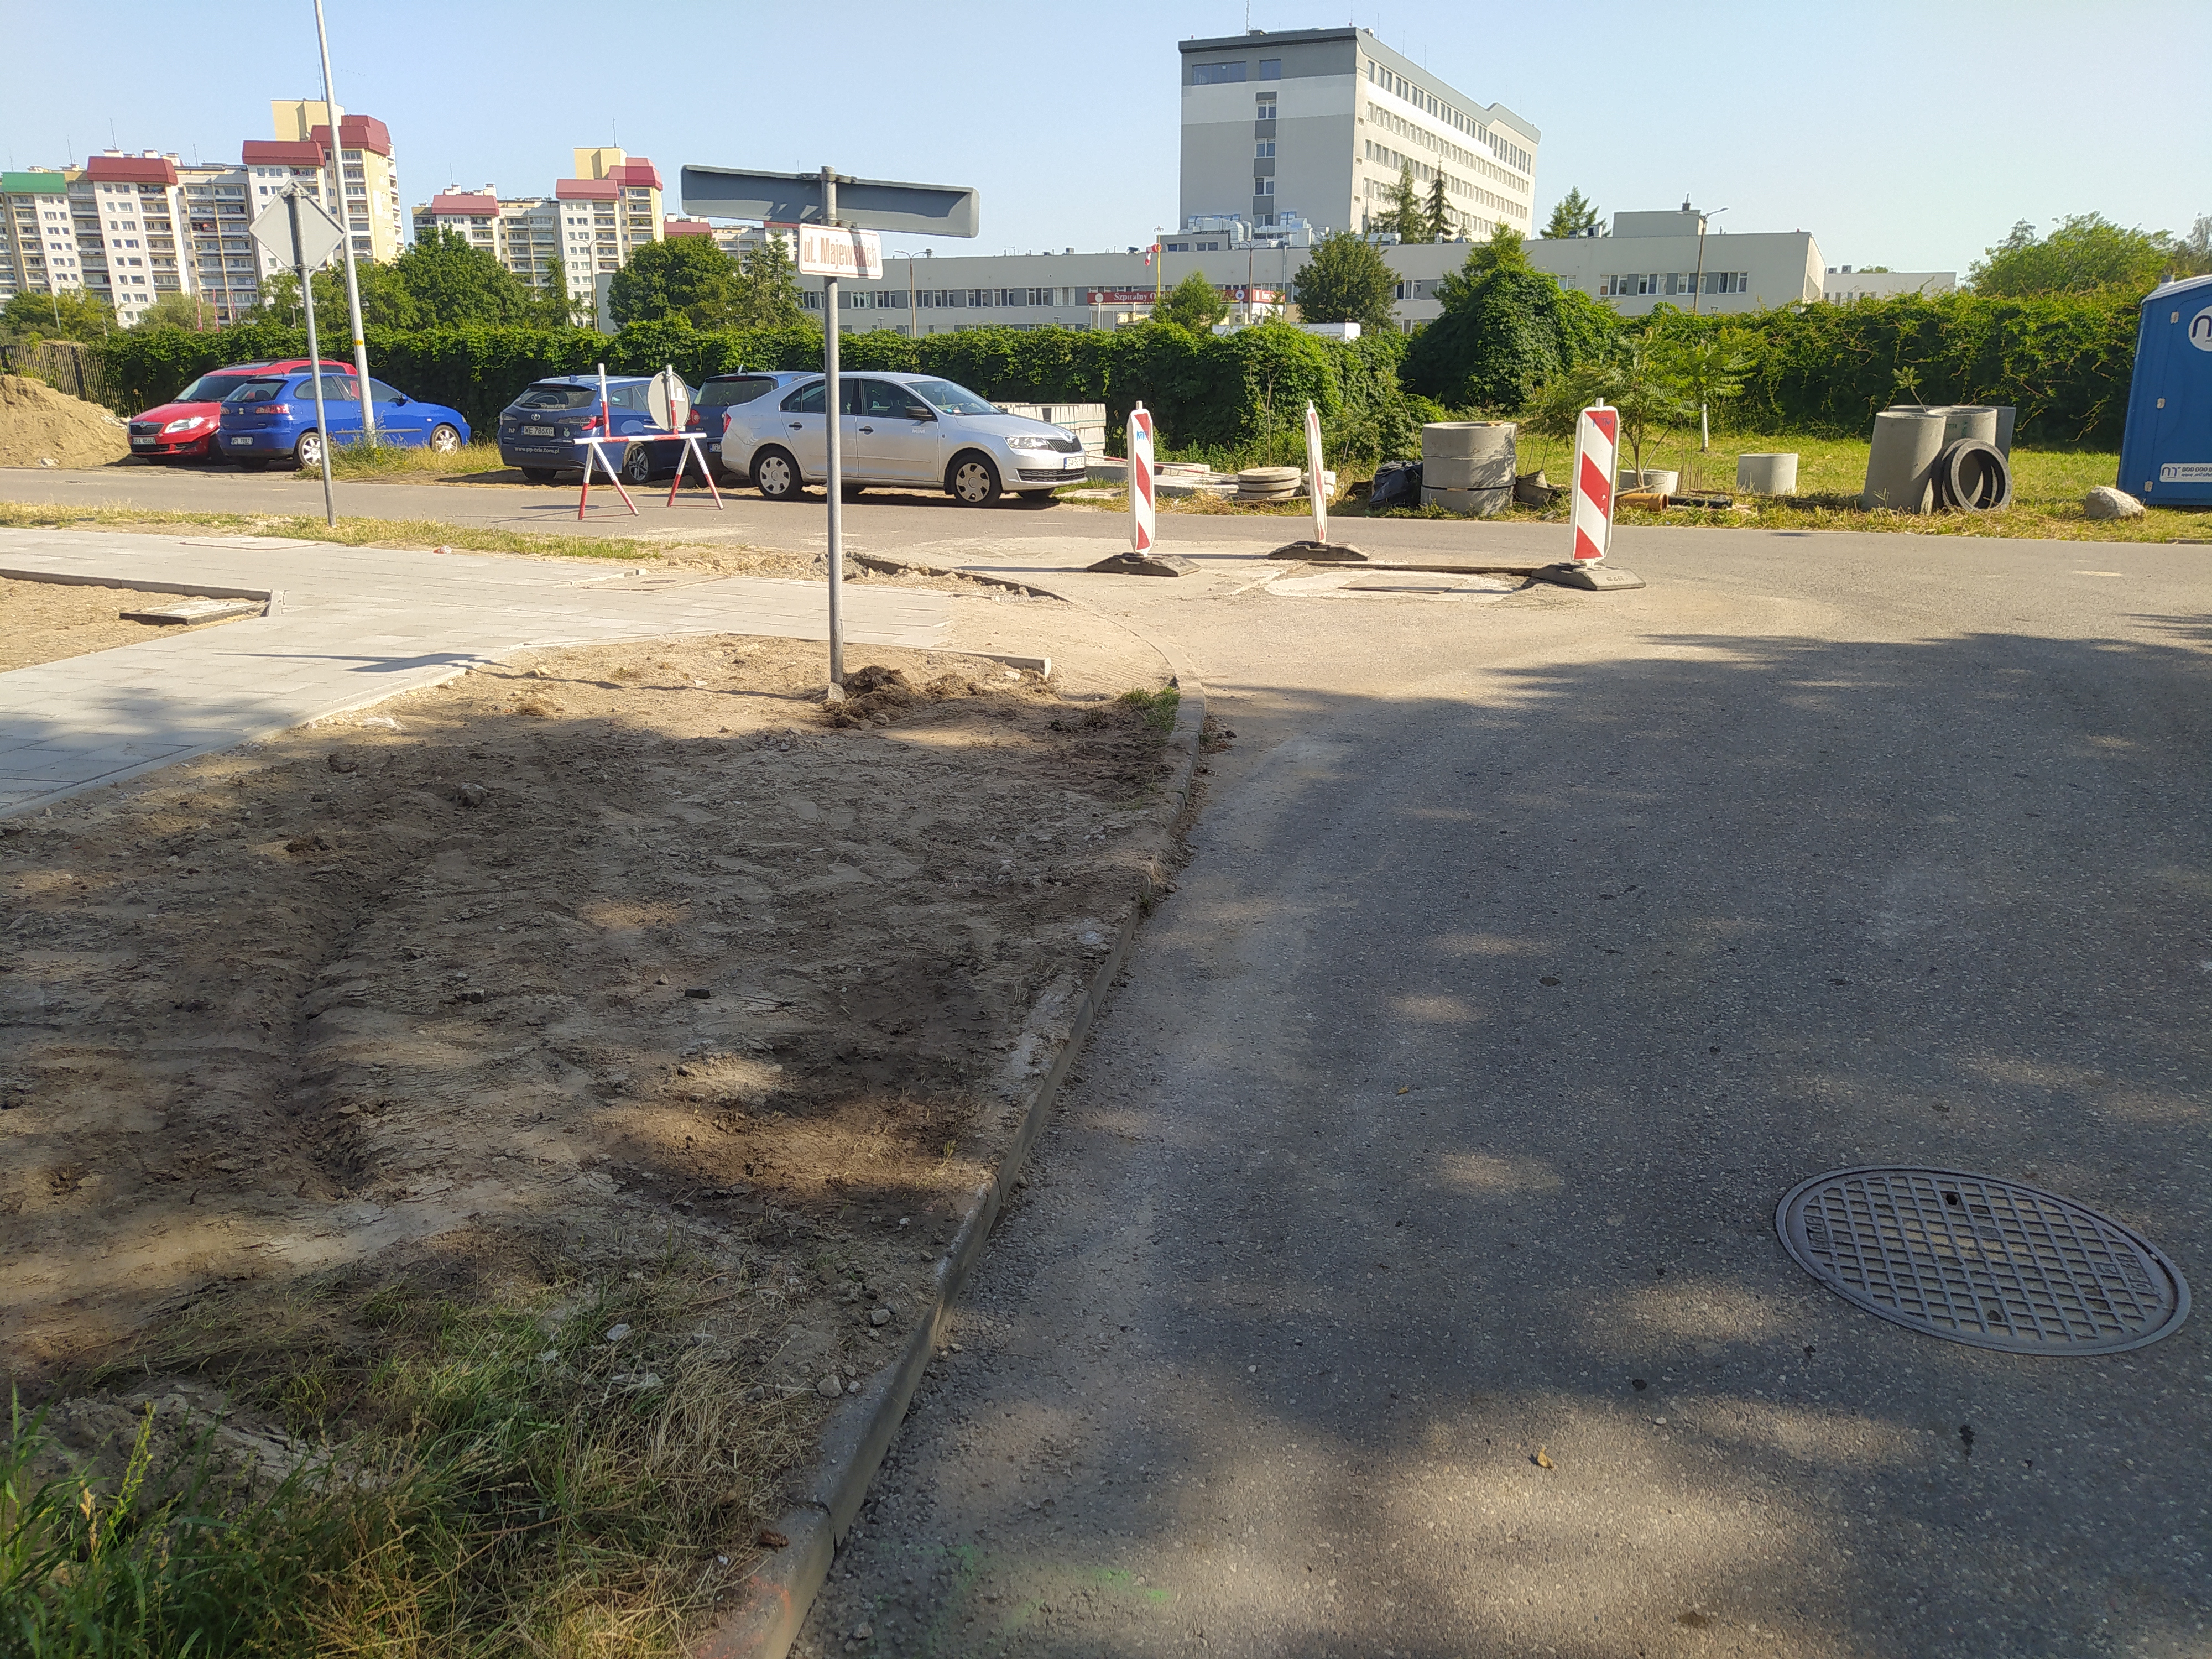 Widok skrzyżowania ulicy Braci Majewskich i ulicy Powstańców Wielkopolskich w trakcie wykonywanych prac remontowych